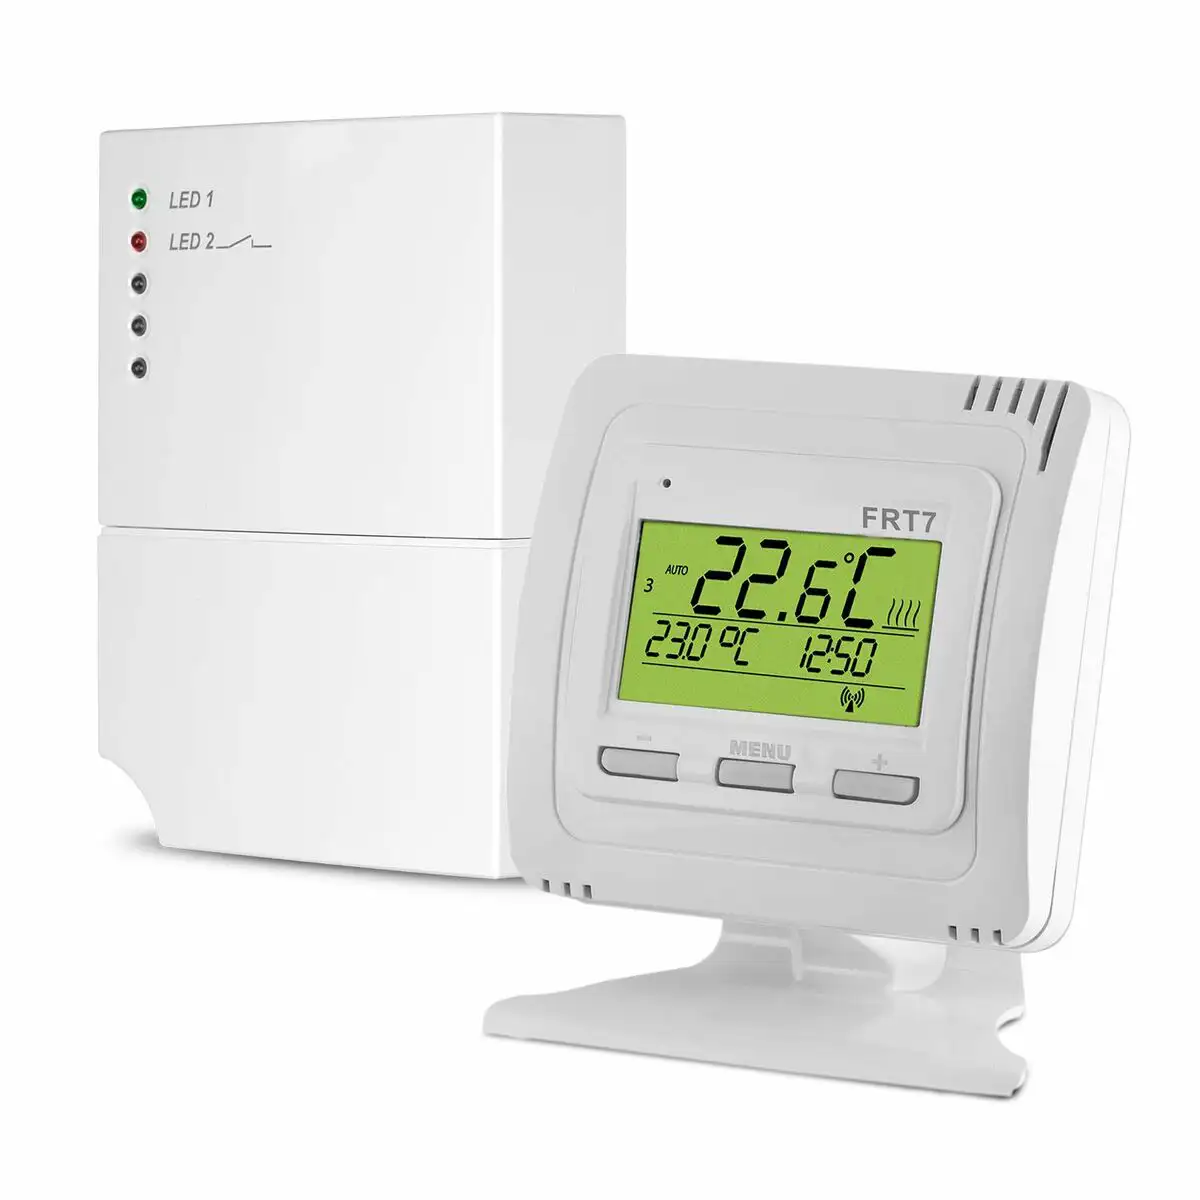 Thermostat blanc reconditionne c _6130. DIAYTAR SENEGAL - Là où Chaque Clic Compte. Parcourez notre boutique en ligne et laissez-vous guider vers des trouvailles uniques qui enrichiront votre quotidien.